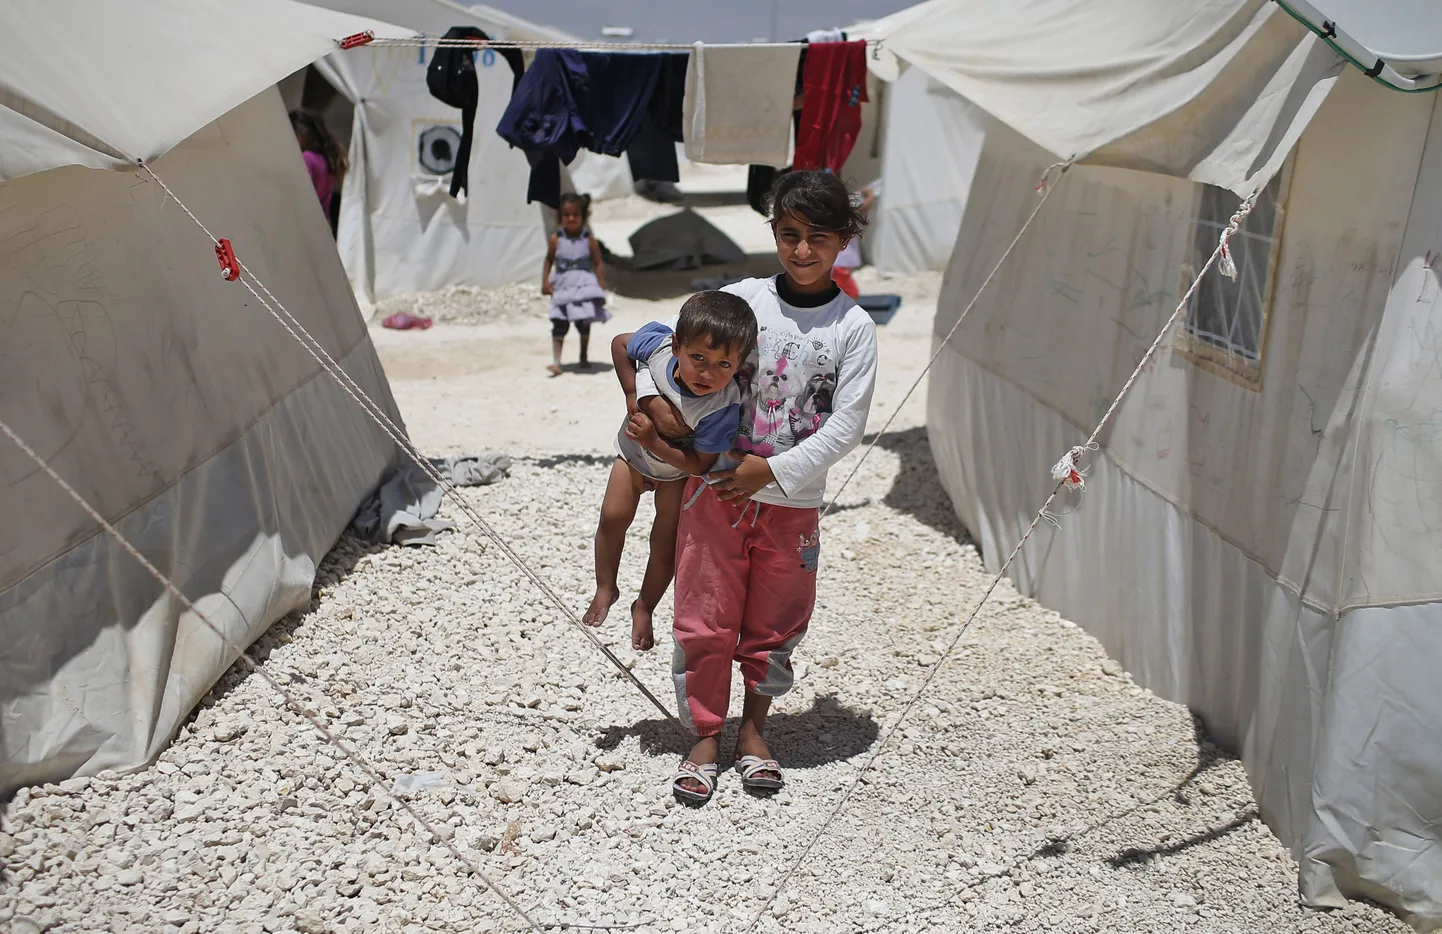 Süüria põgenikest lapsed Türgi-Süüria piiril asuvas Suruçi laagris. Türgis arvatakse olevat ligi kaks miljonit süürlast.